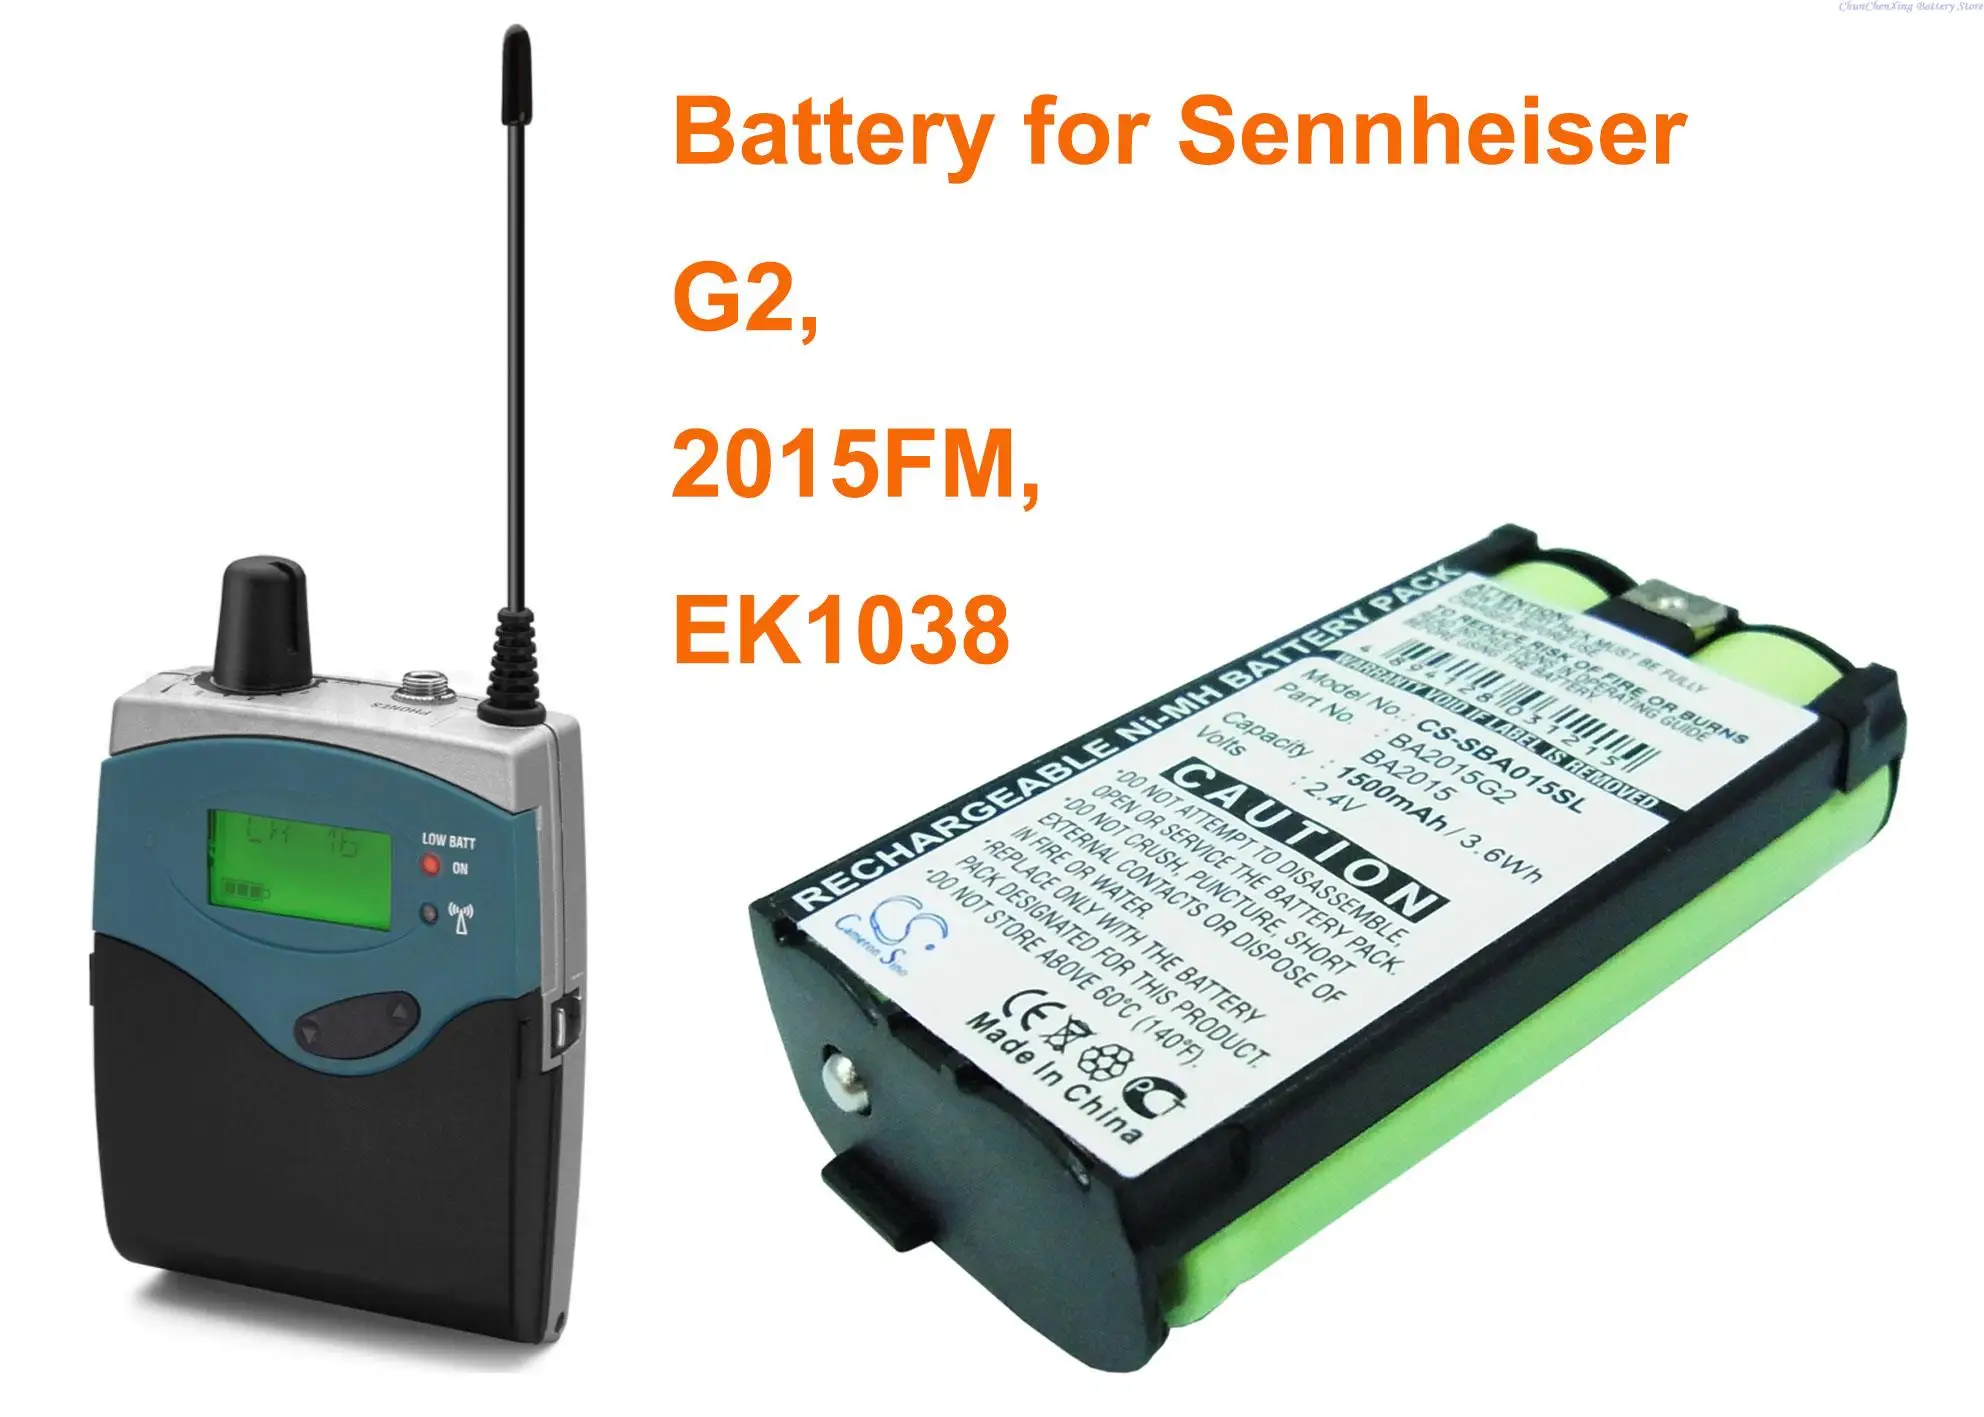 

Cameron Sino 1500mAh Battery BA2015, BA2015G2 for Sennheiser 2015FM, EK1038, G2